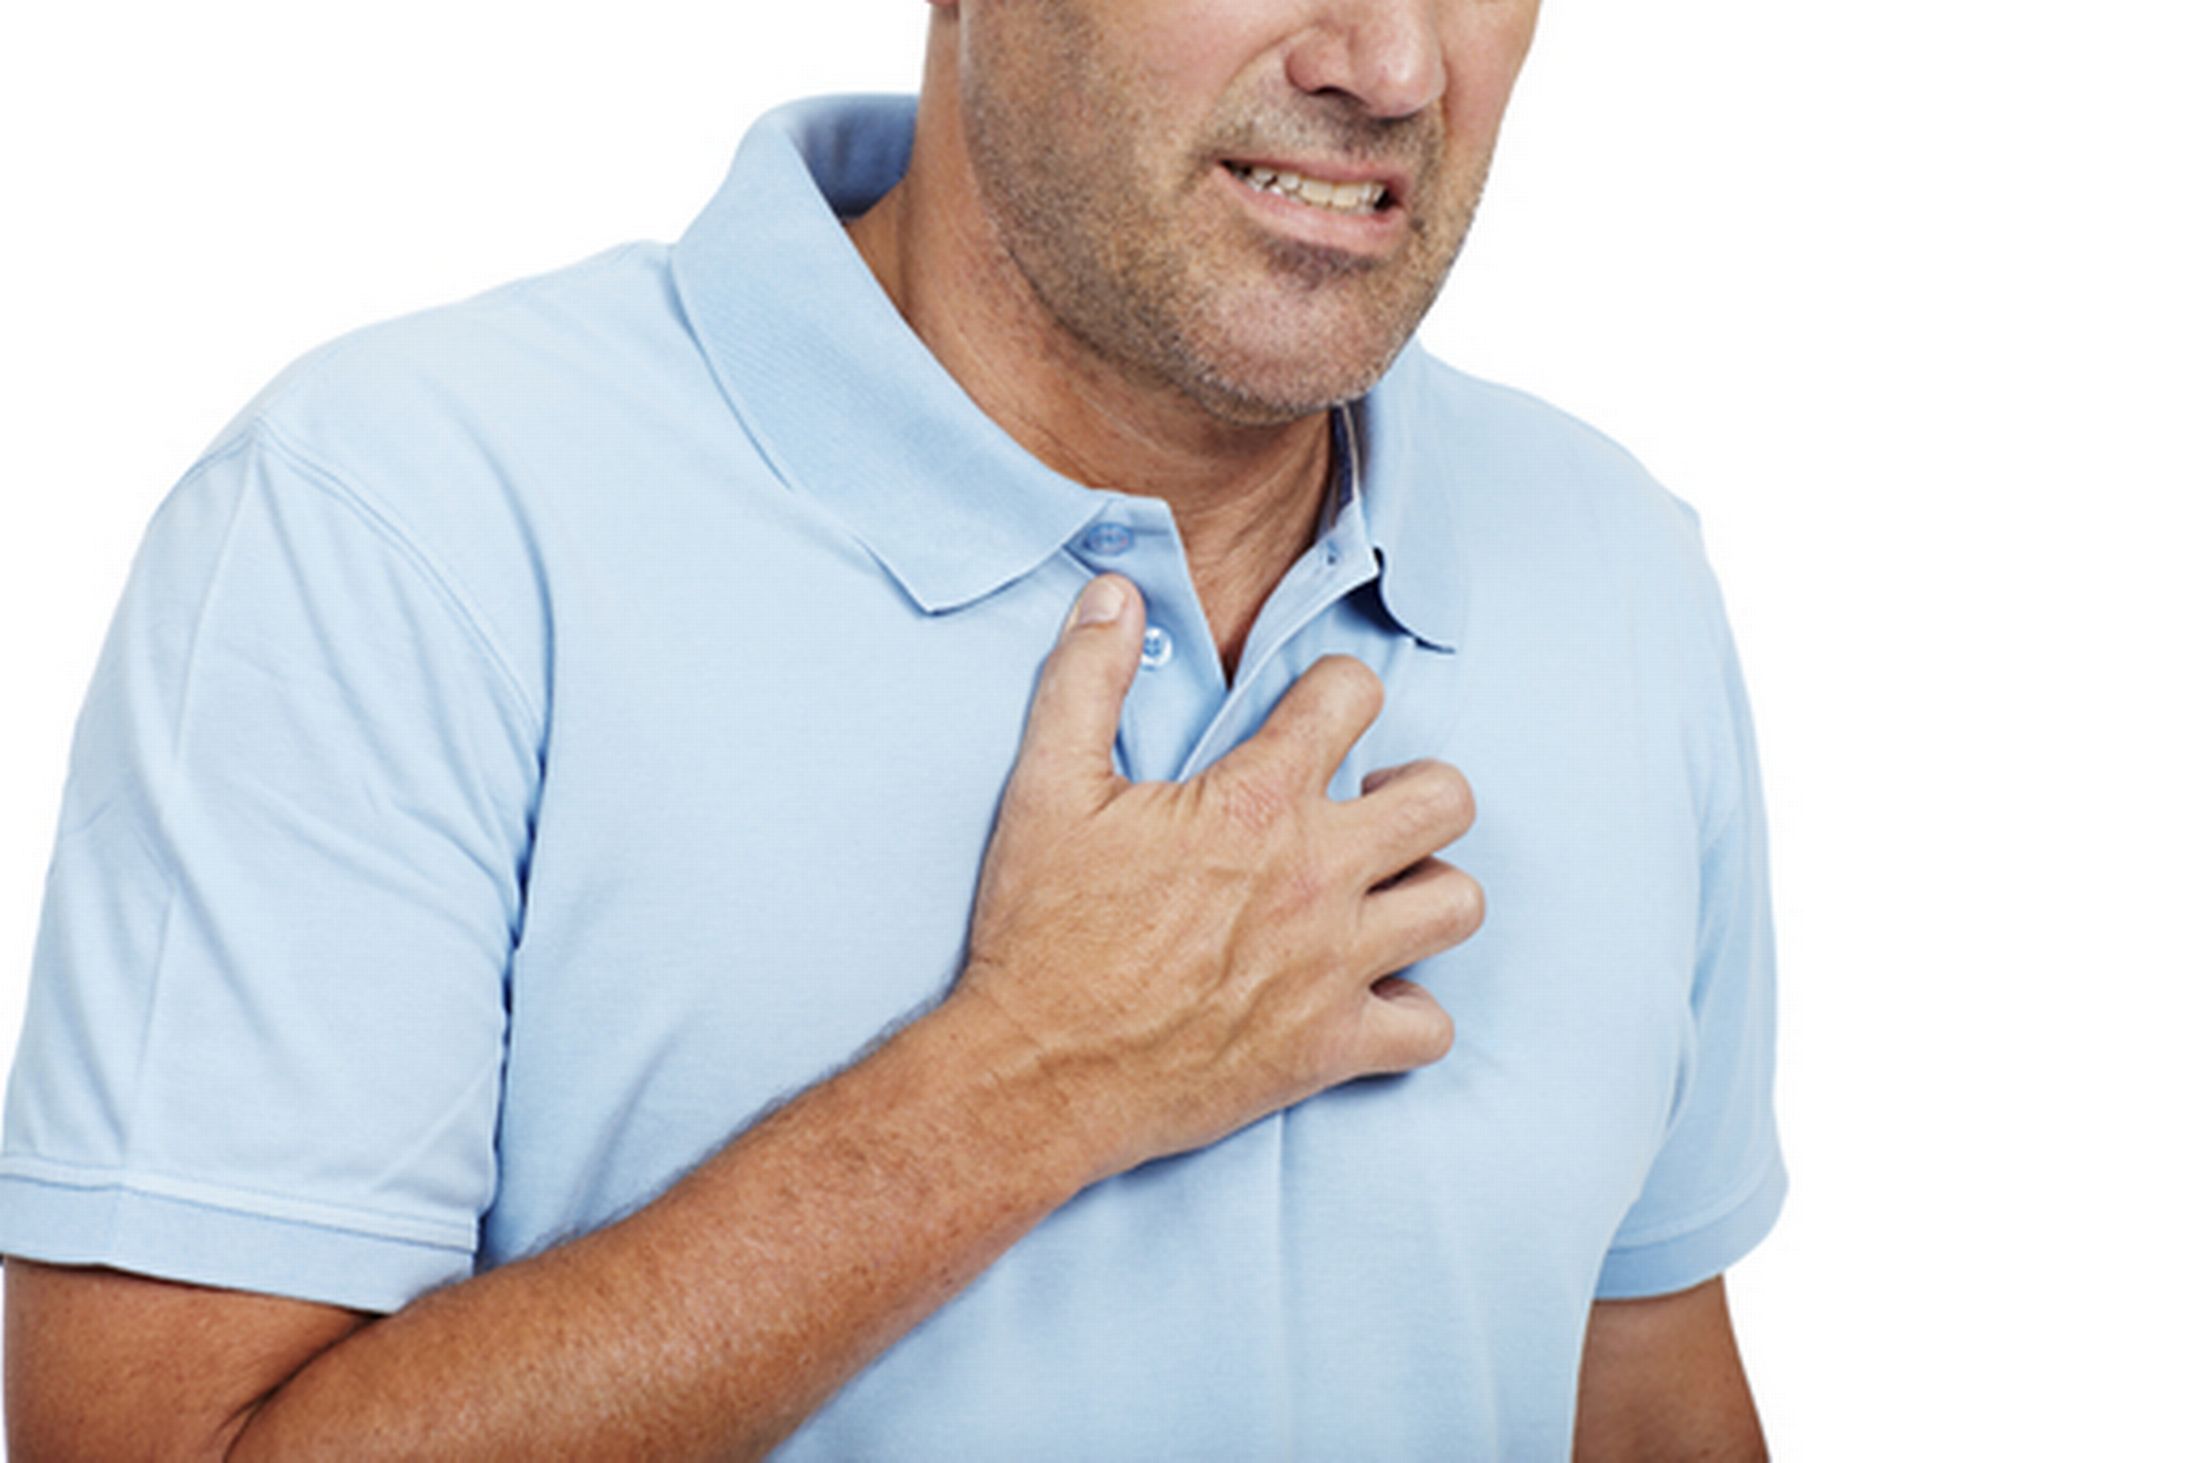 egészségbiztosítás szívproblémákkal küzdő egyének számára hipotalamusz hipertónia szindróma